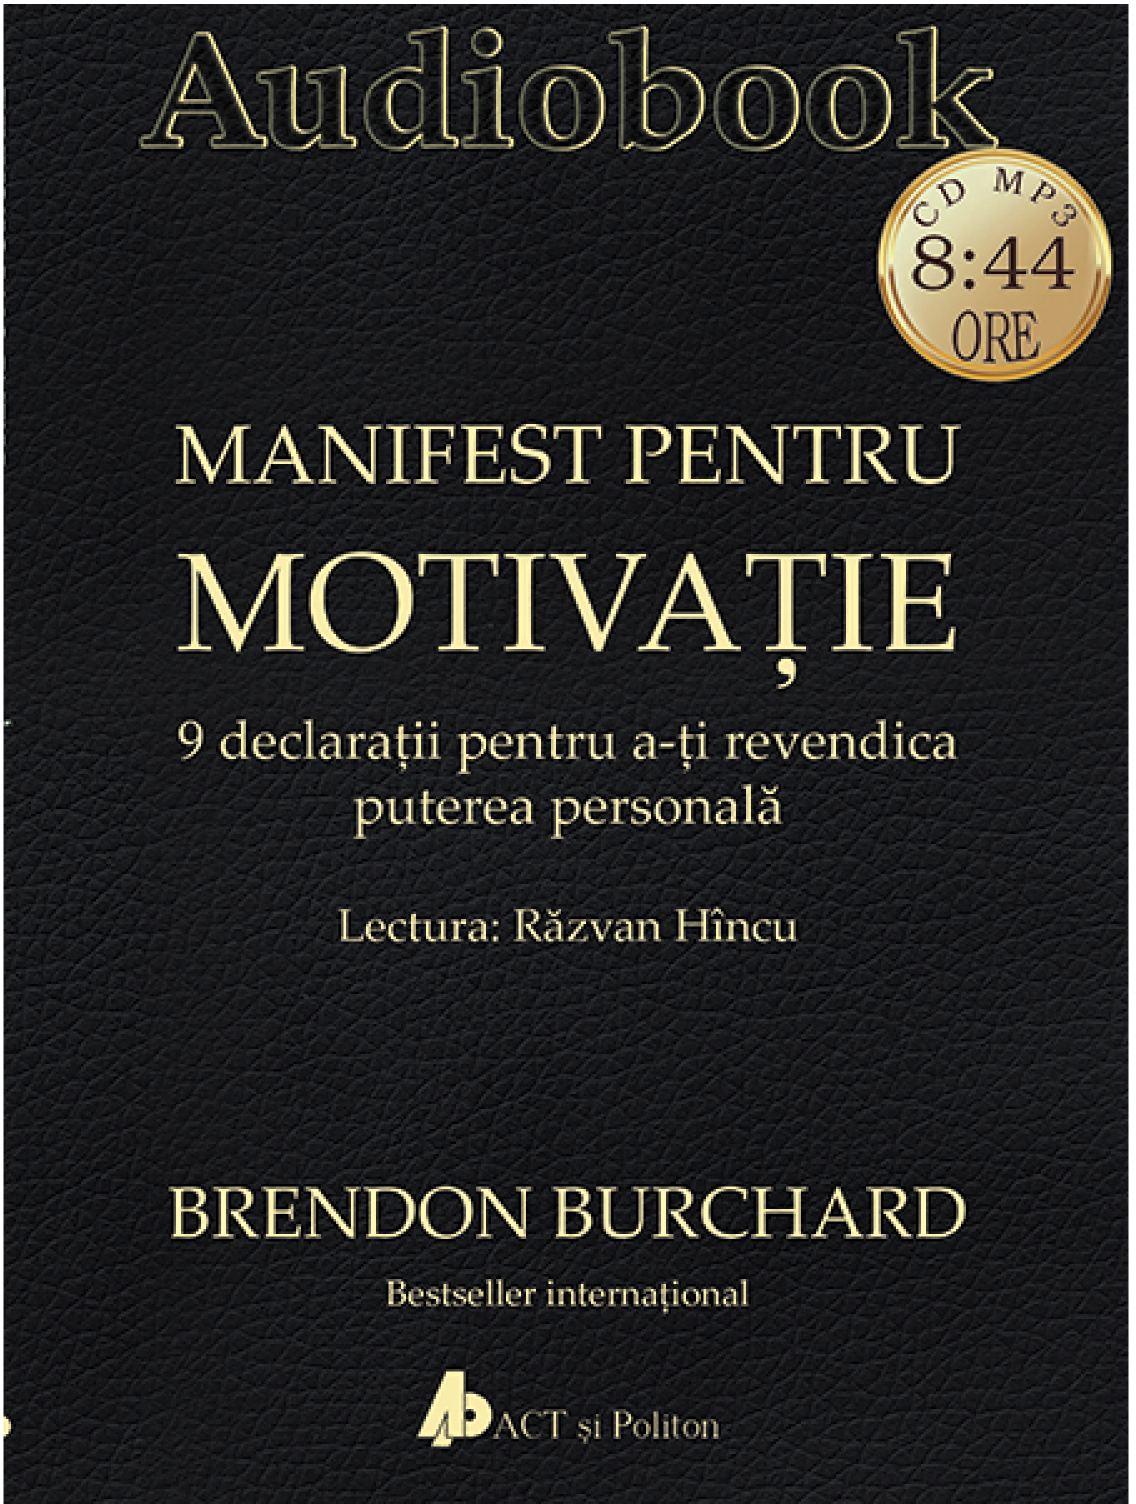 Manifest pentru motivatie | Brendon Burchard Audiobooks poza 2022